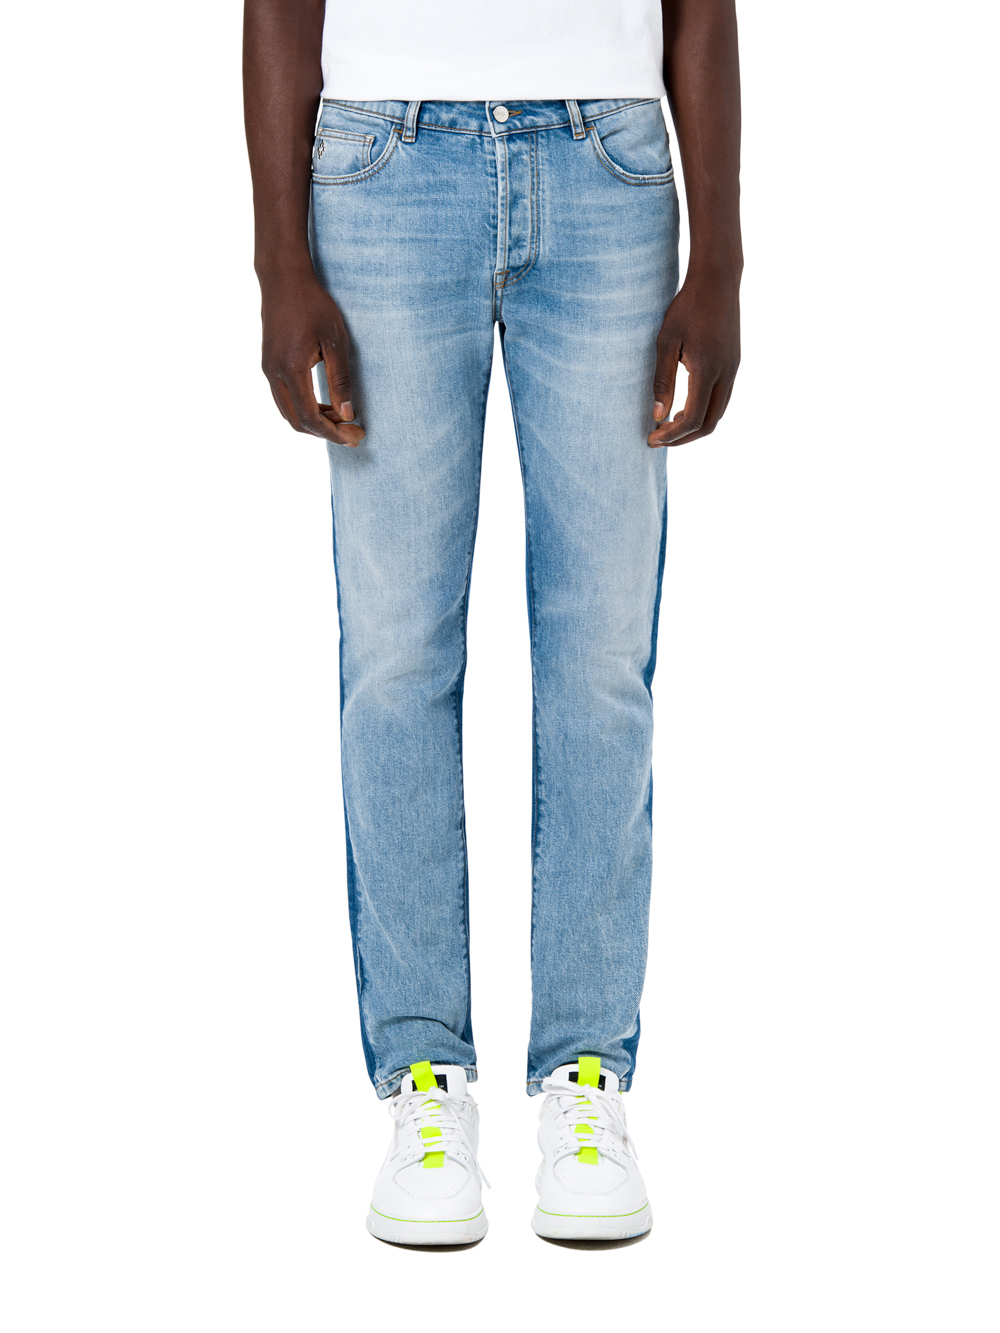  Marcelo Burlon Vintage Wash Jeans fashion trends for men 2019